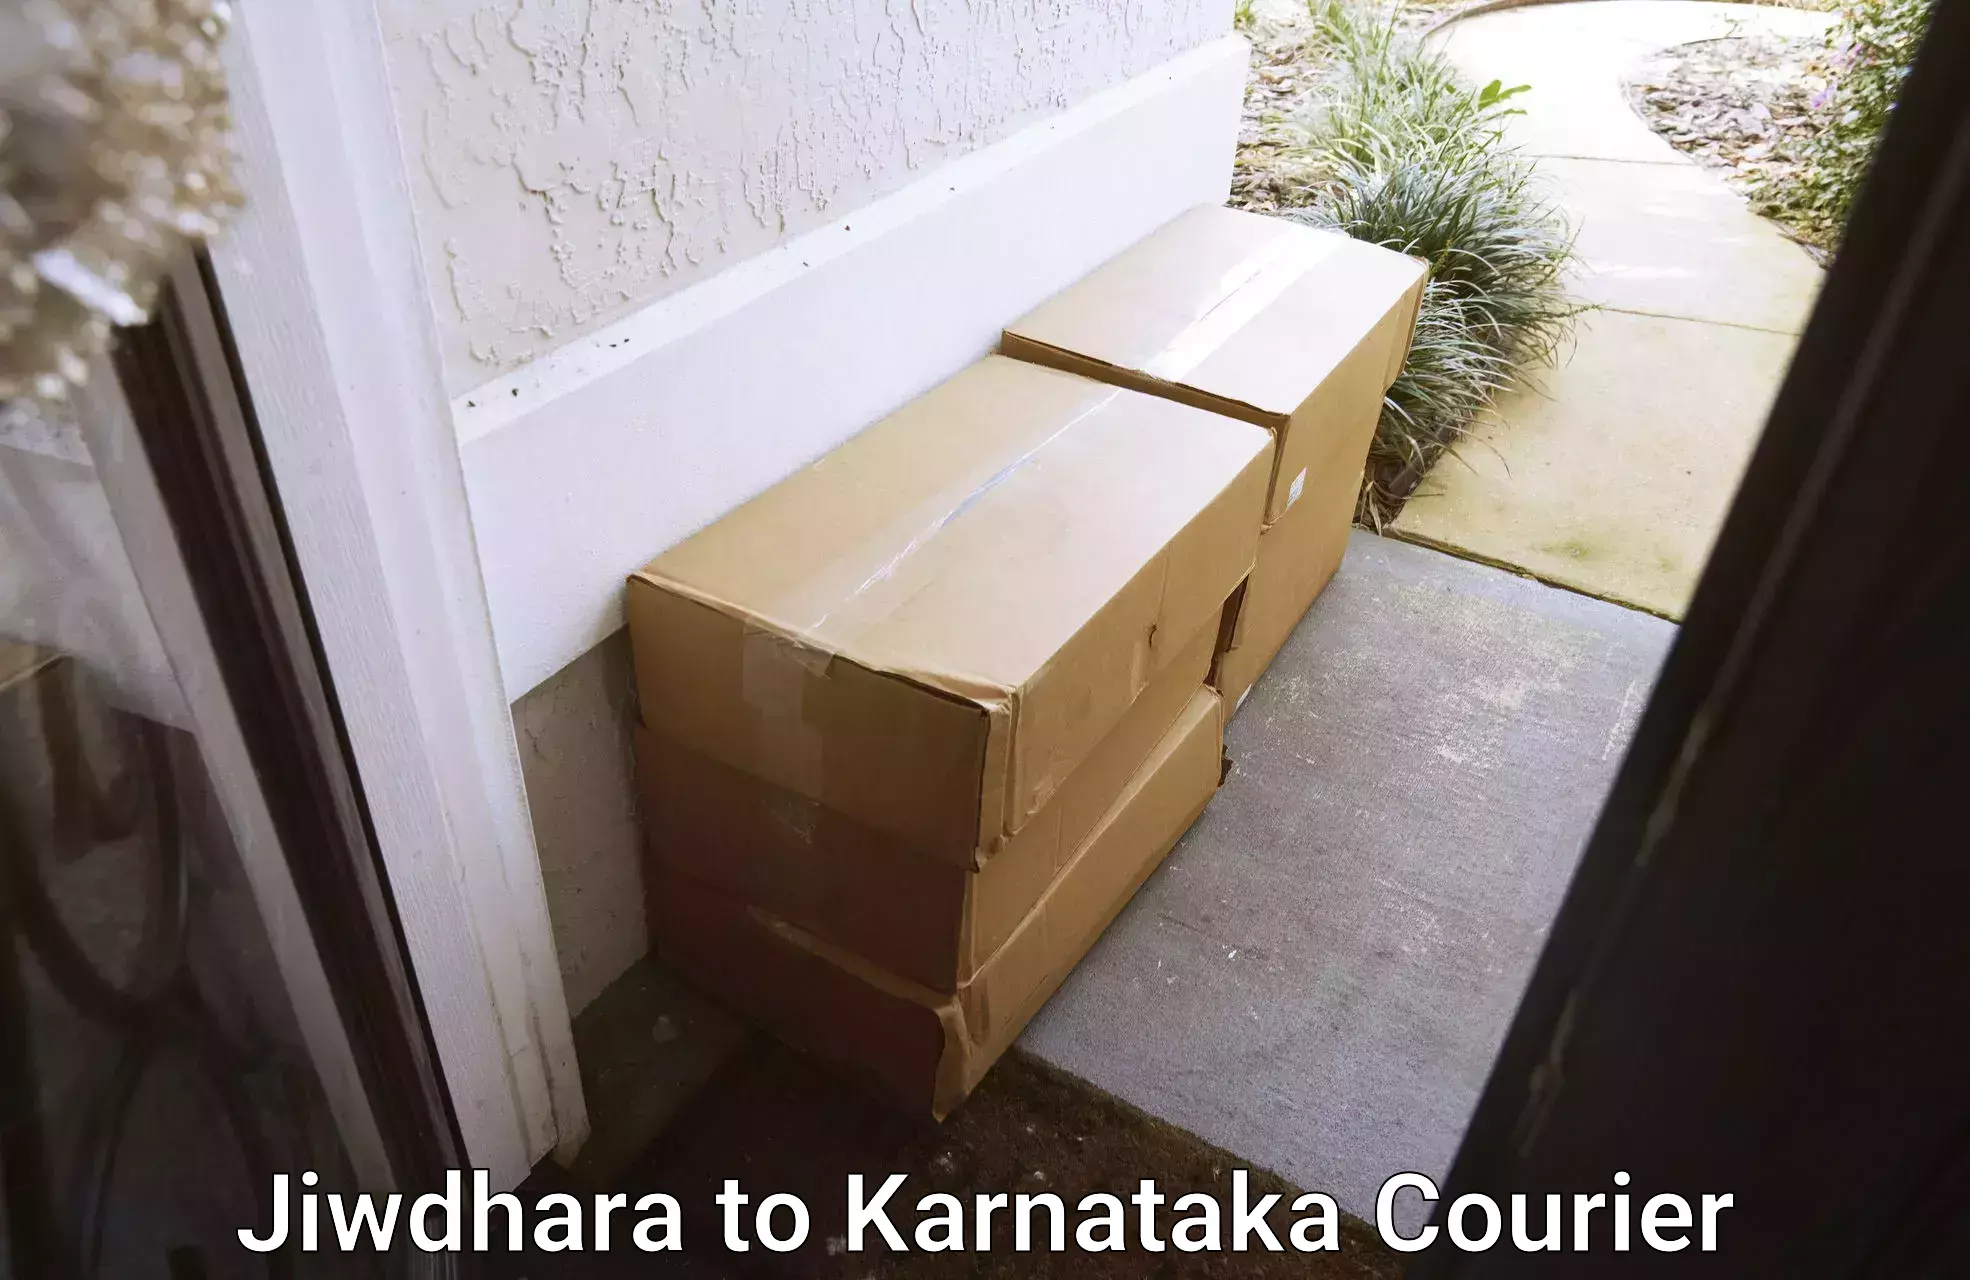 Professional packing and transport Jiwdhara to Madikeri